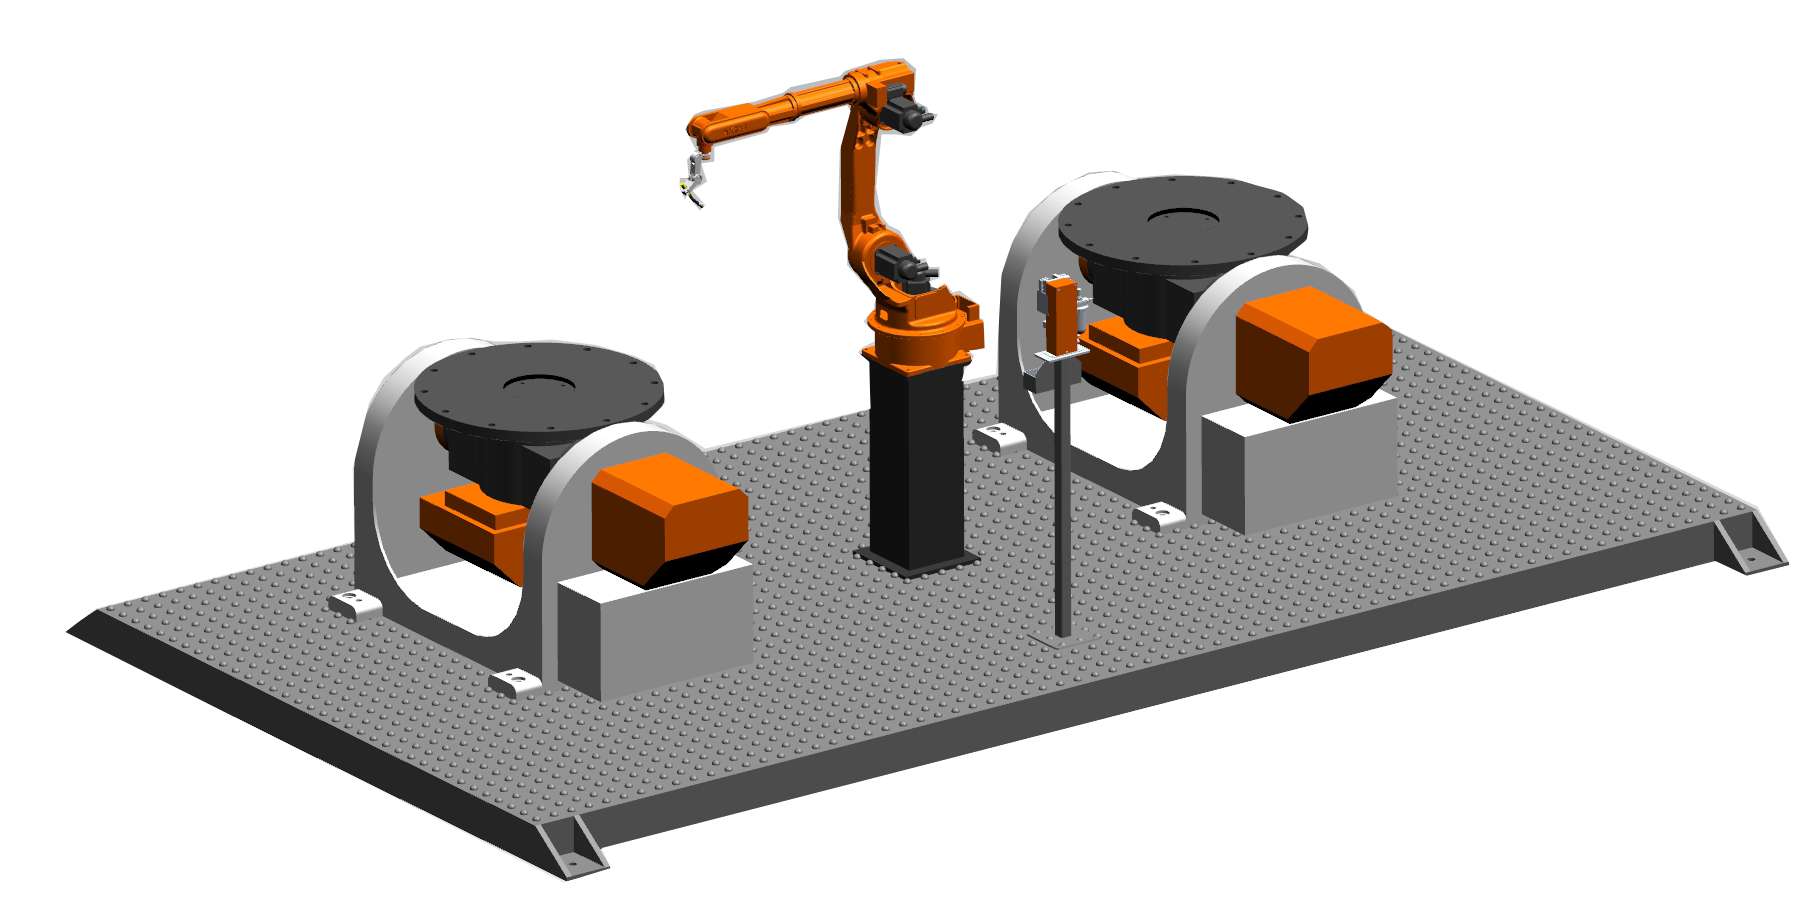 二保焊自动焊接机	凯沃智造	自动化流水线	青岛焊接机器人	自动焊接机